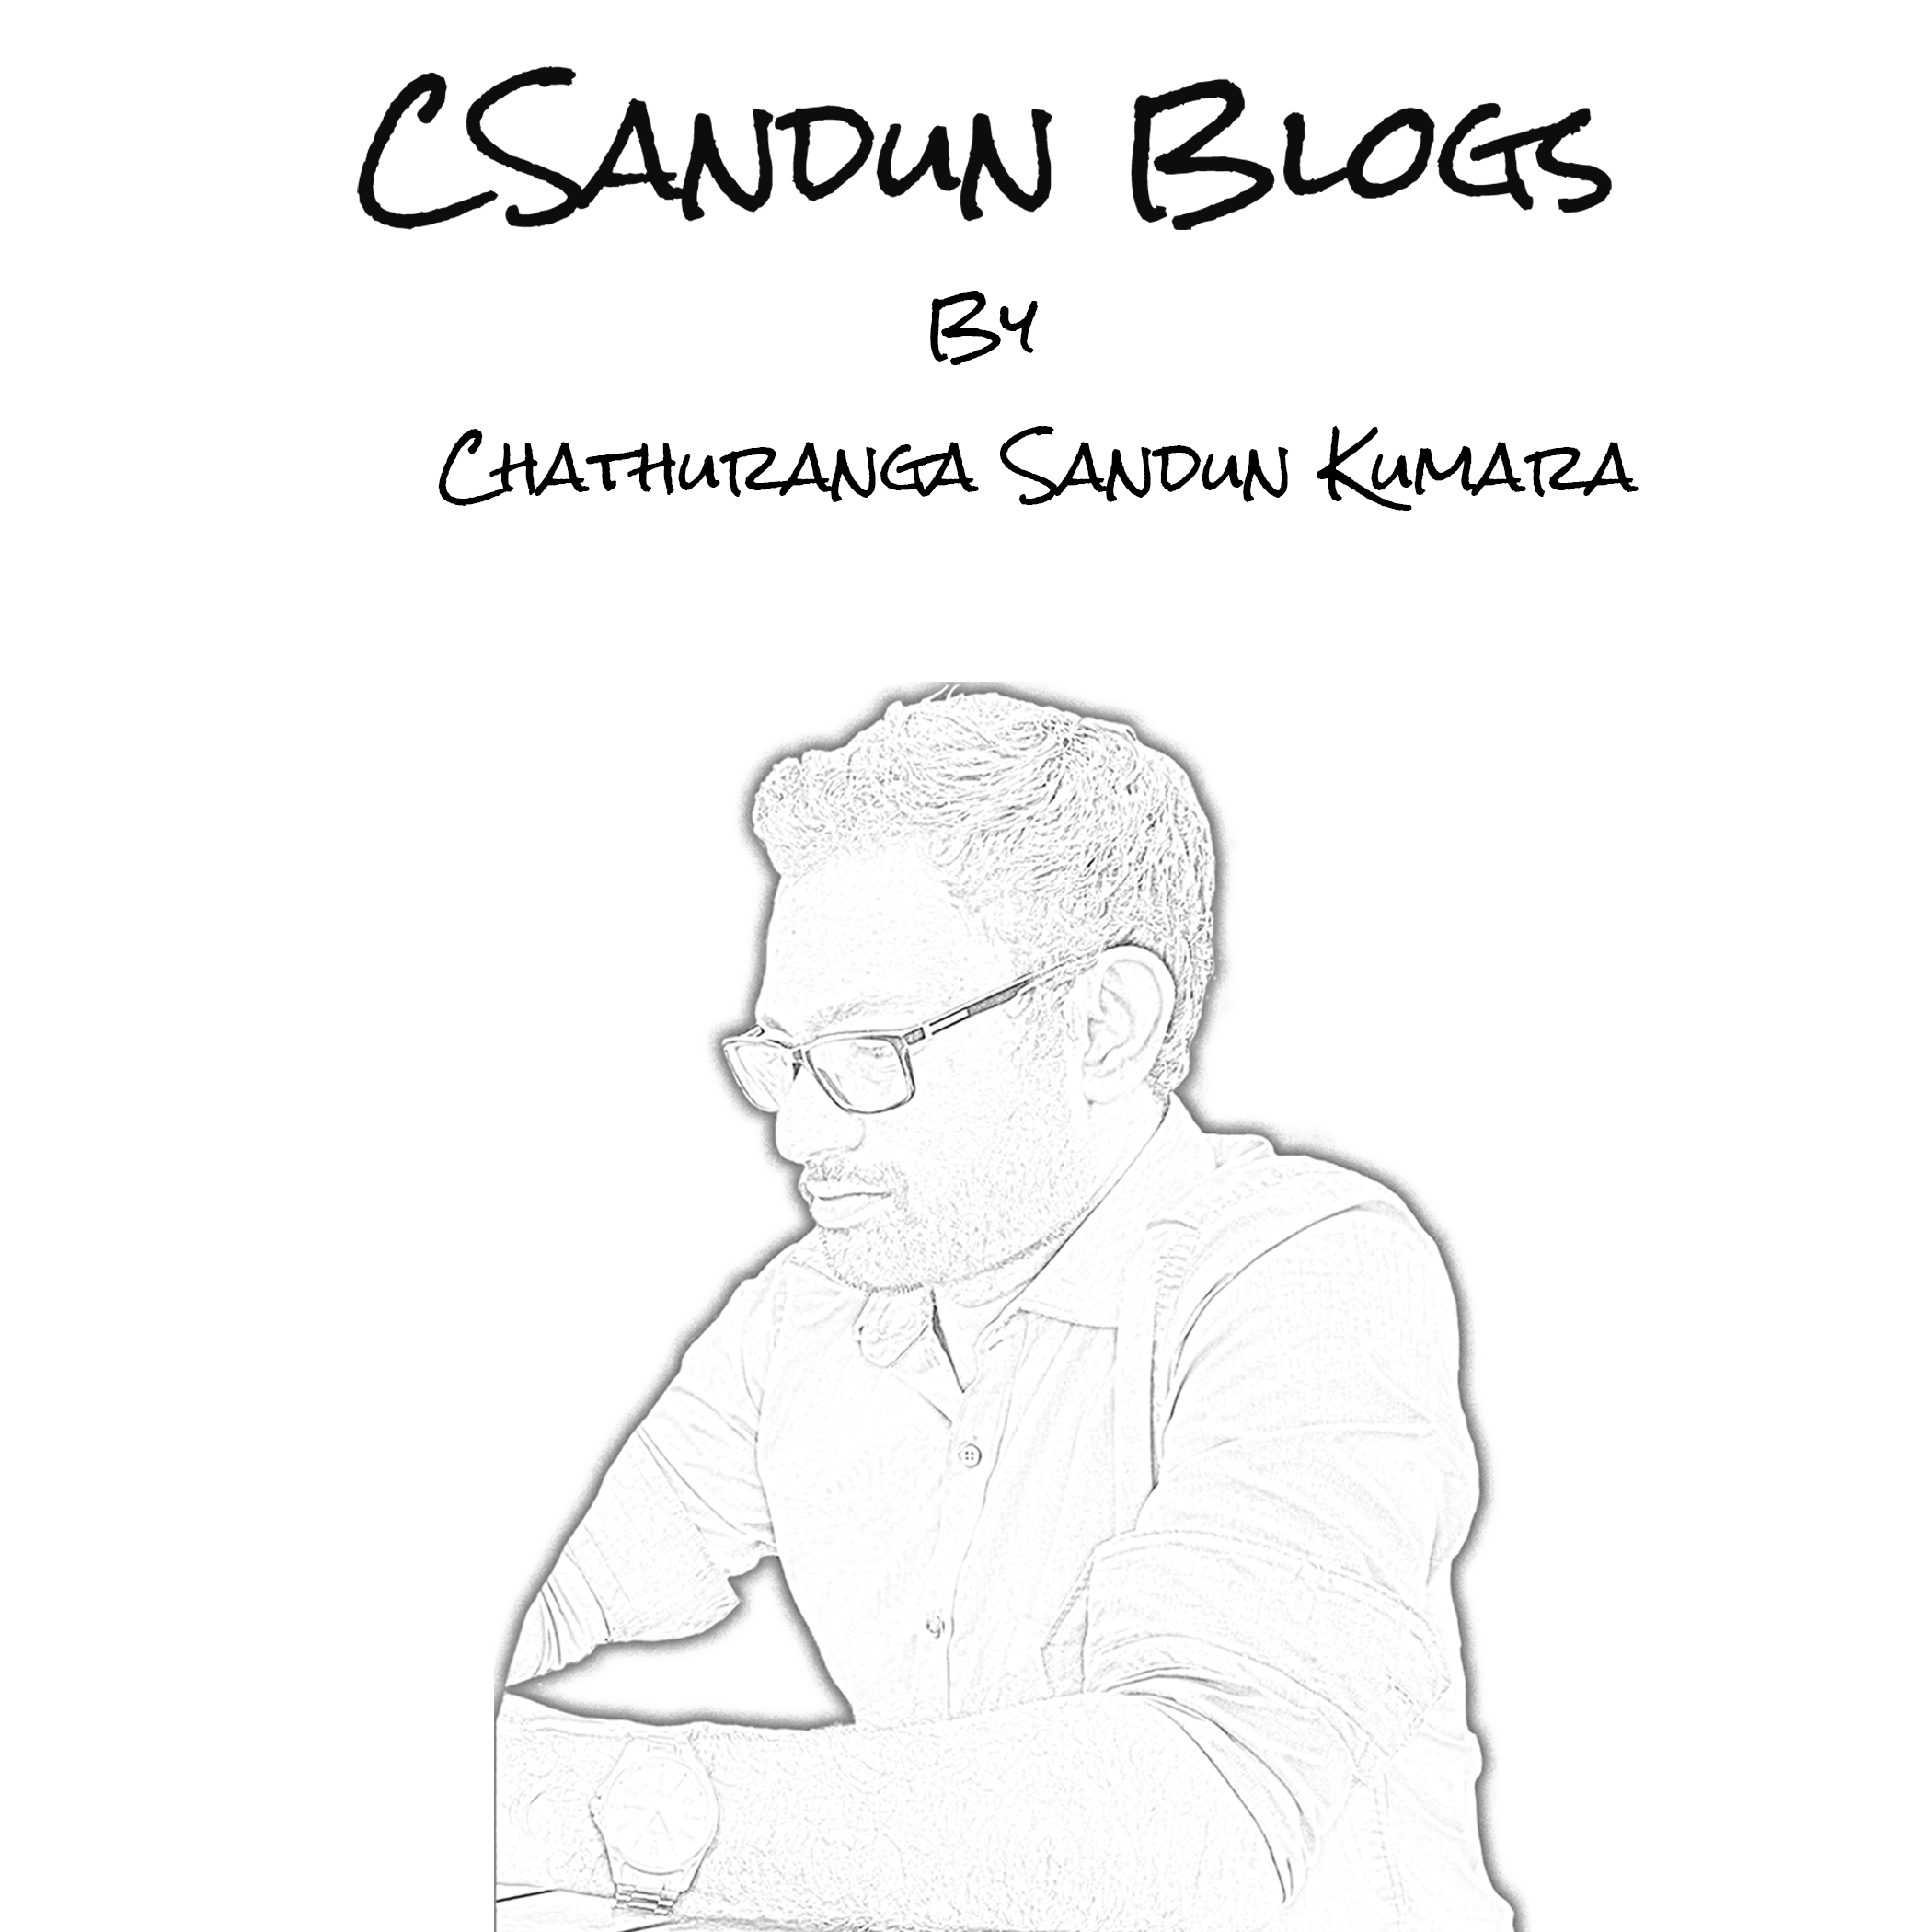 About CSandun